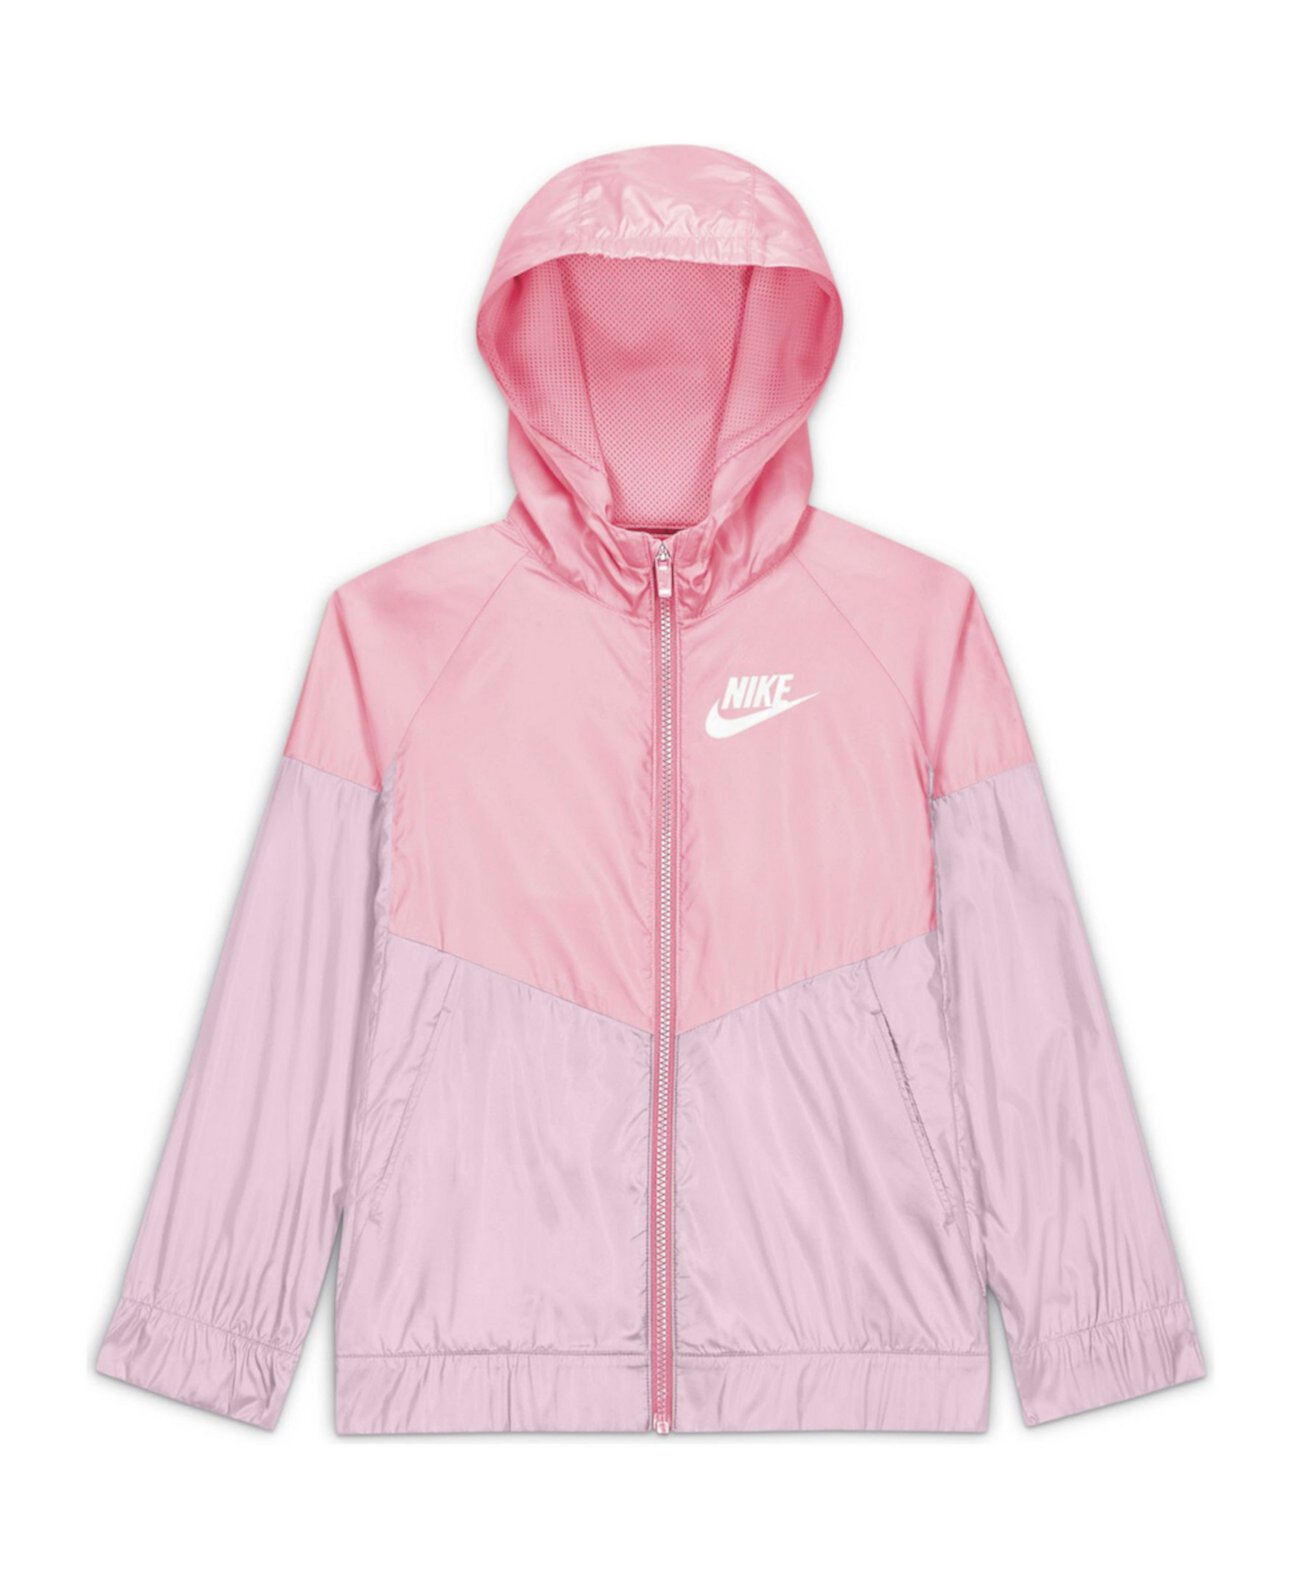 Спортивная куртка увеличенного размера для больших девочек Wind-Runner Jacket Nike